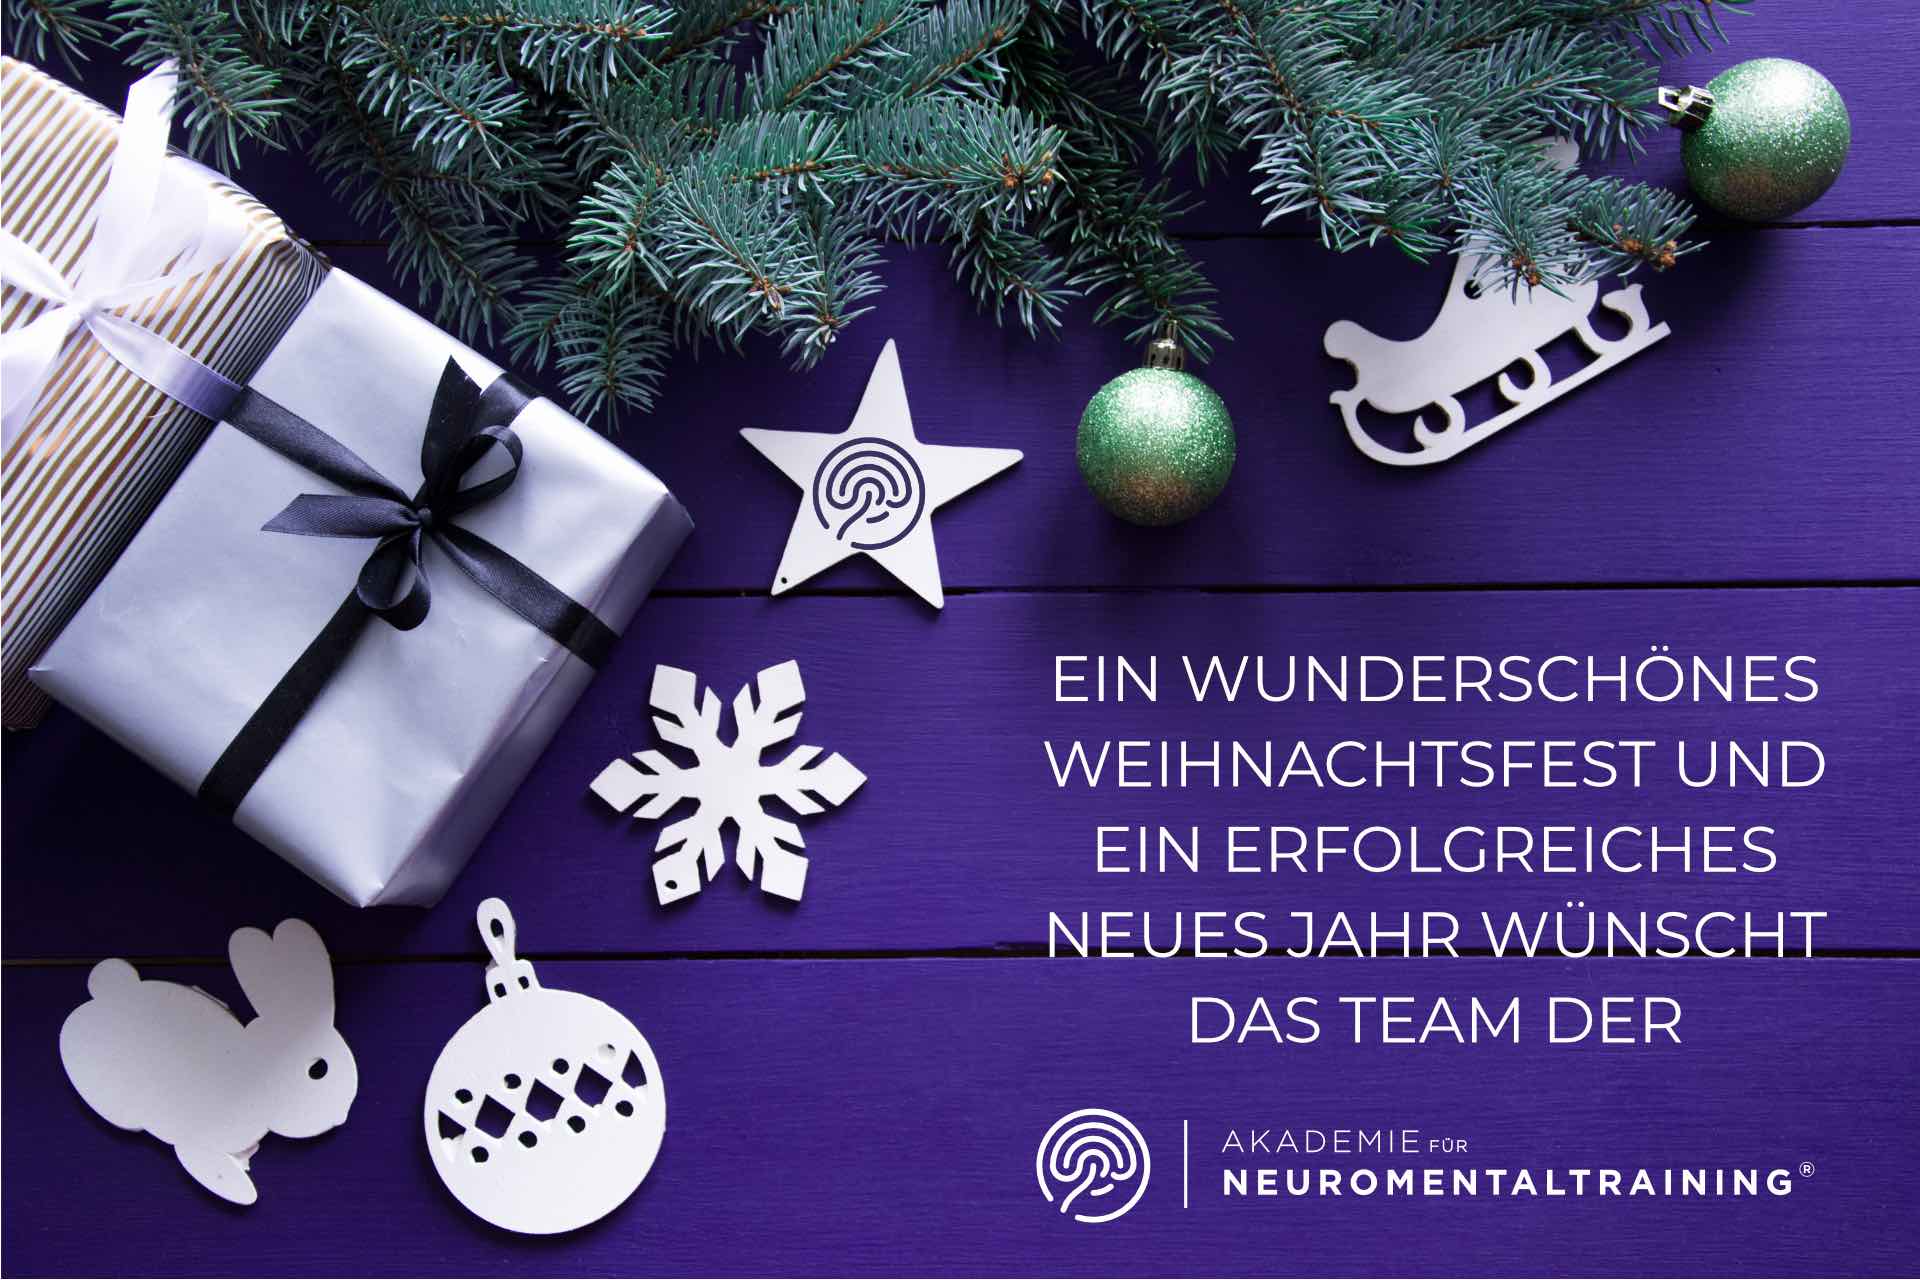 Weihnachten, Neuromentaltraining